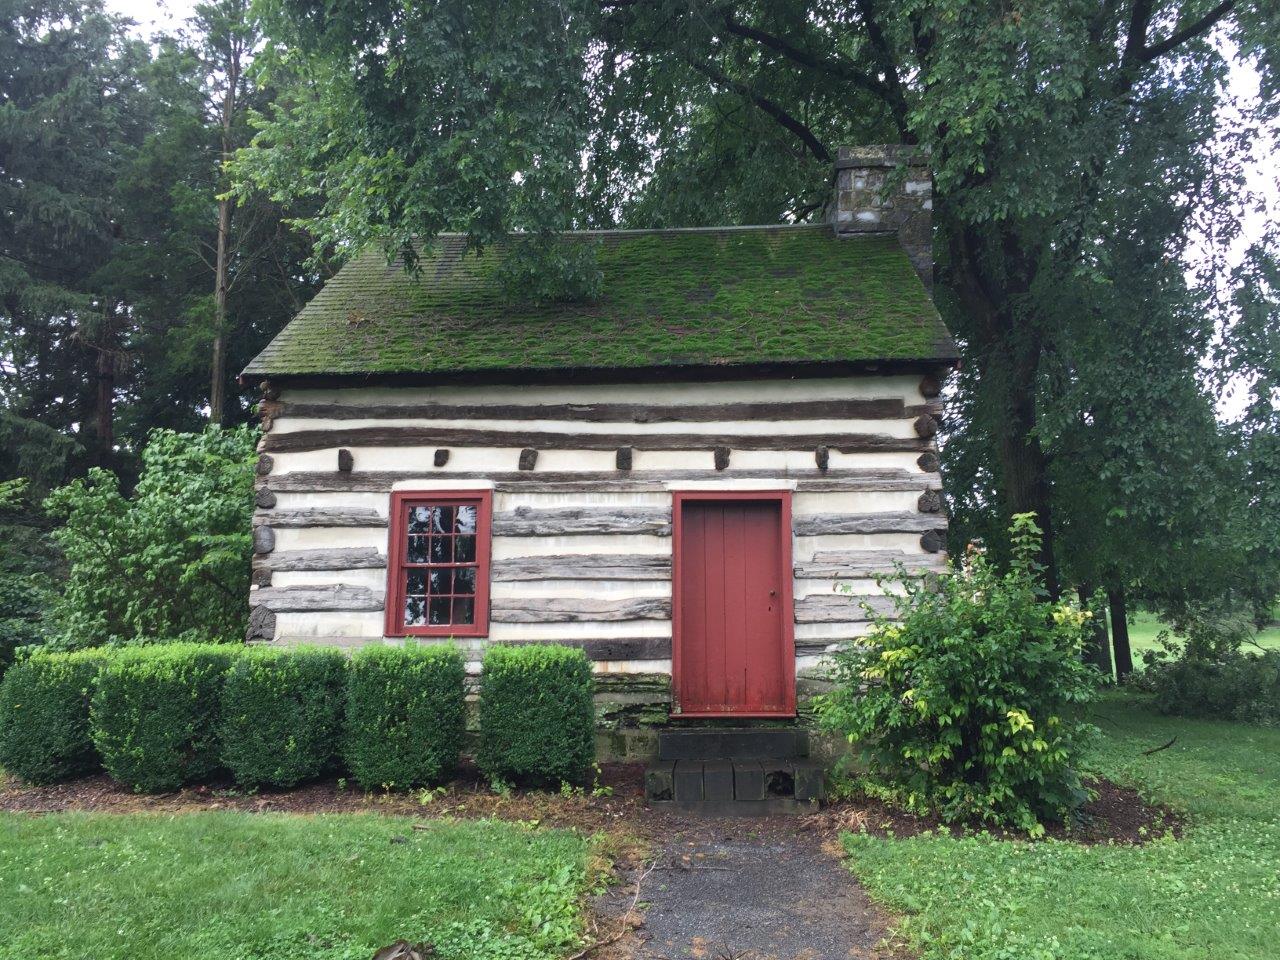 James Buchanan cabin in Mercersburg, Pennsylvania